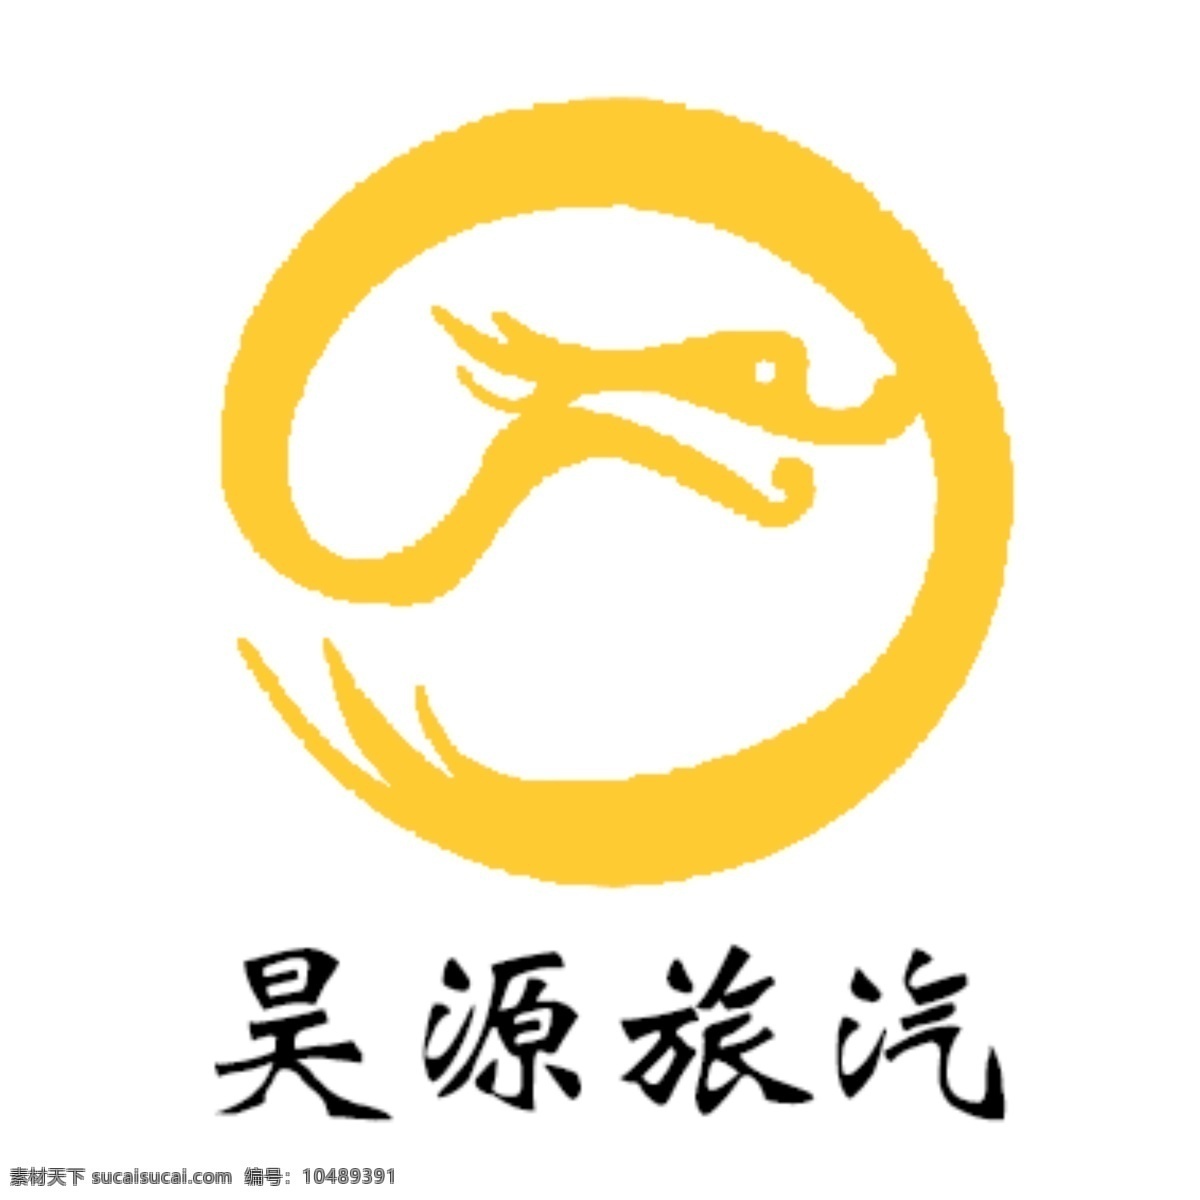 简洁大气 车队 logo logo设计 车队logo 旅行社 原创设计 其他原创设计